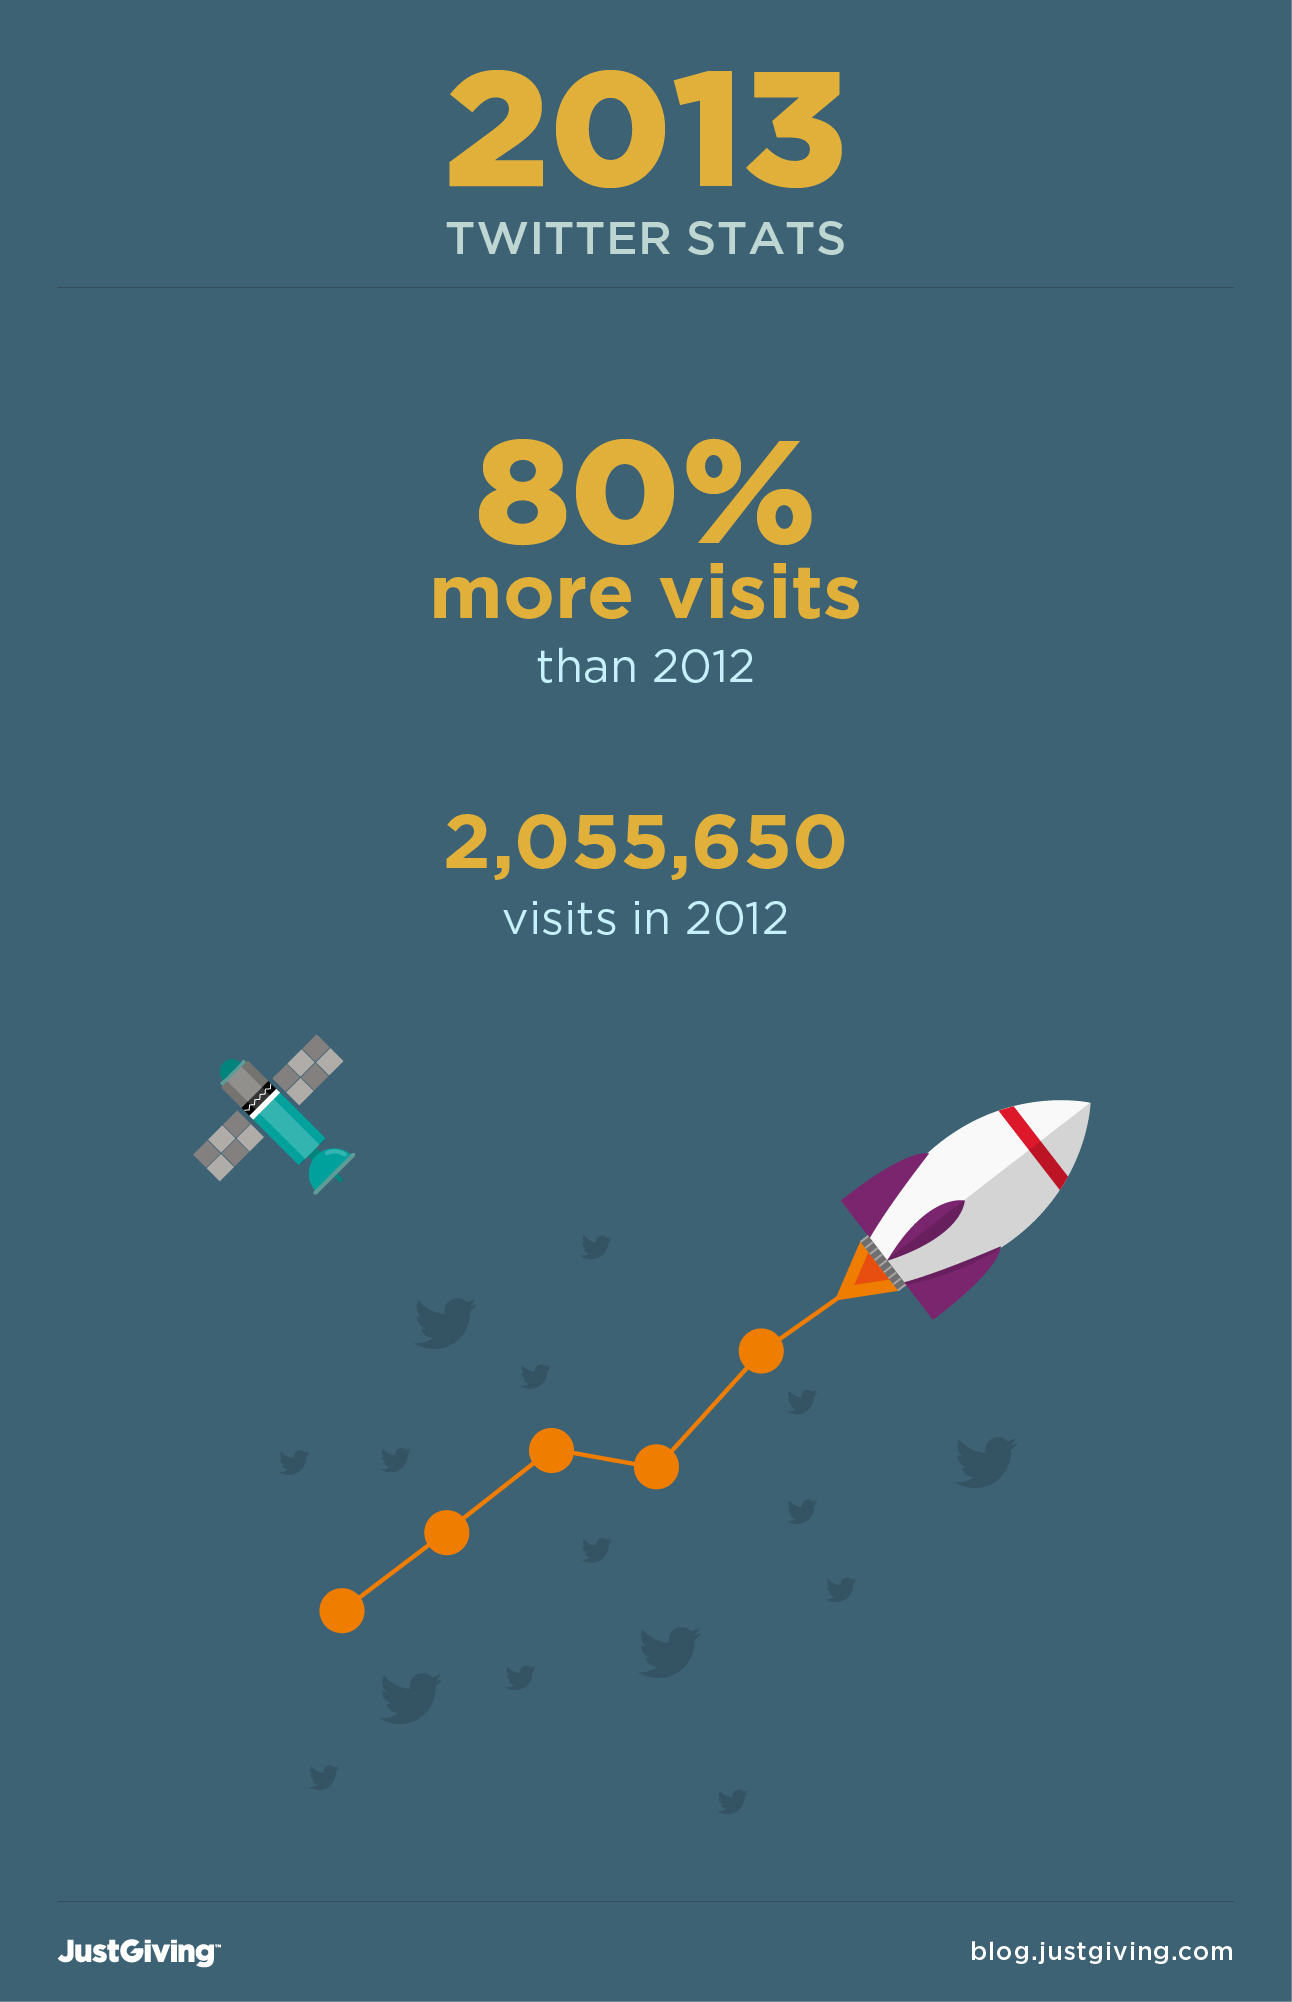 80% more visits than 2012